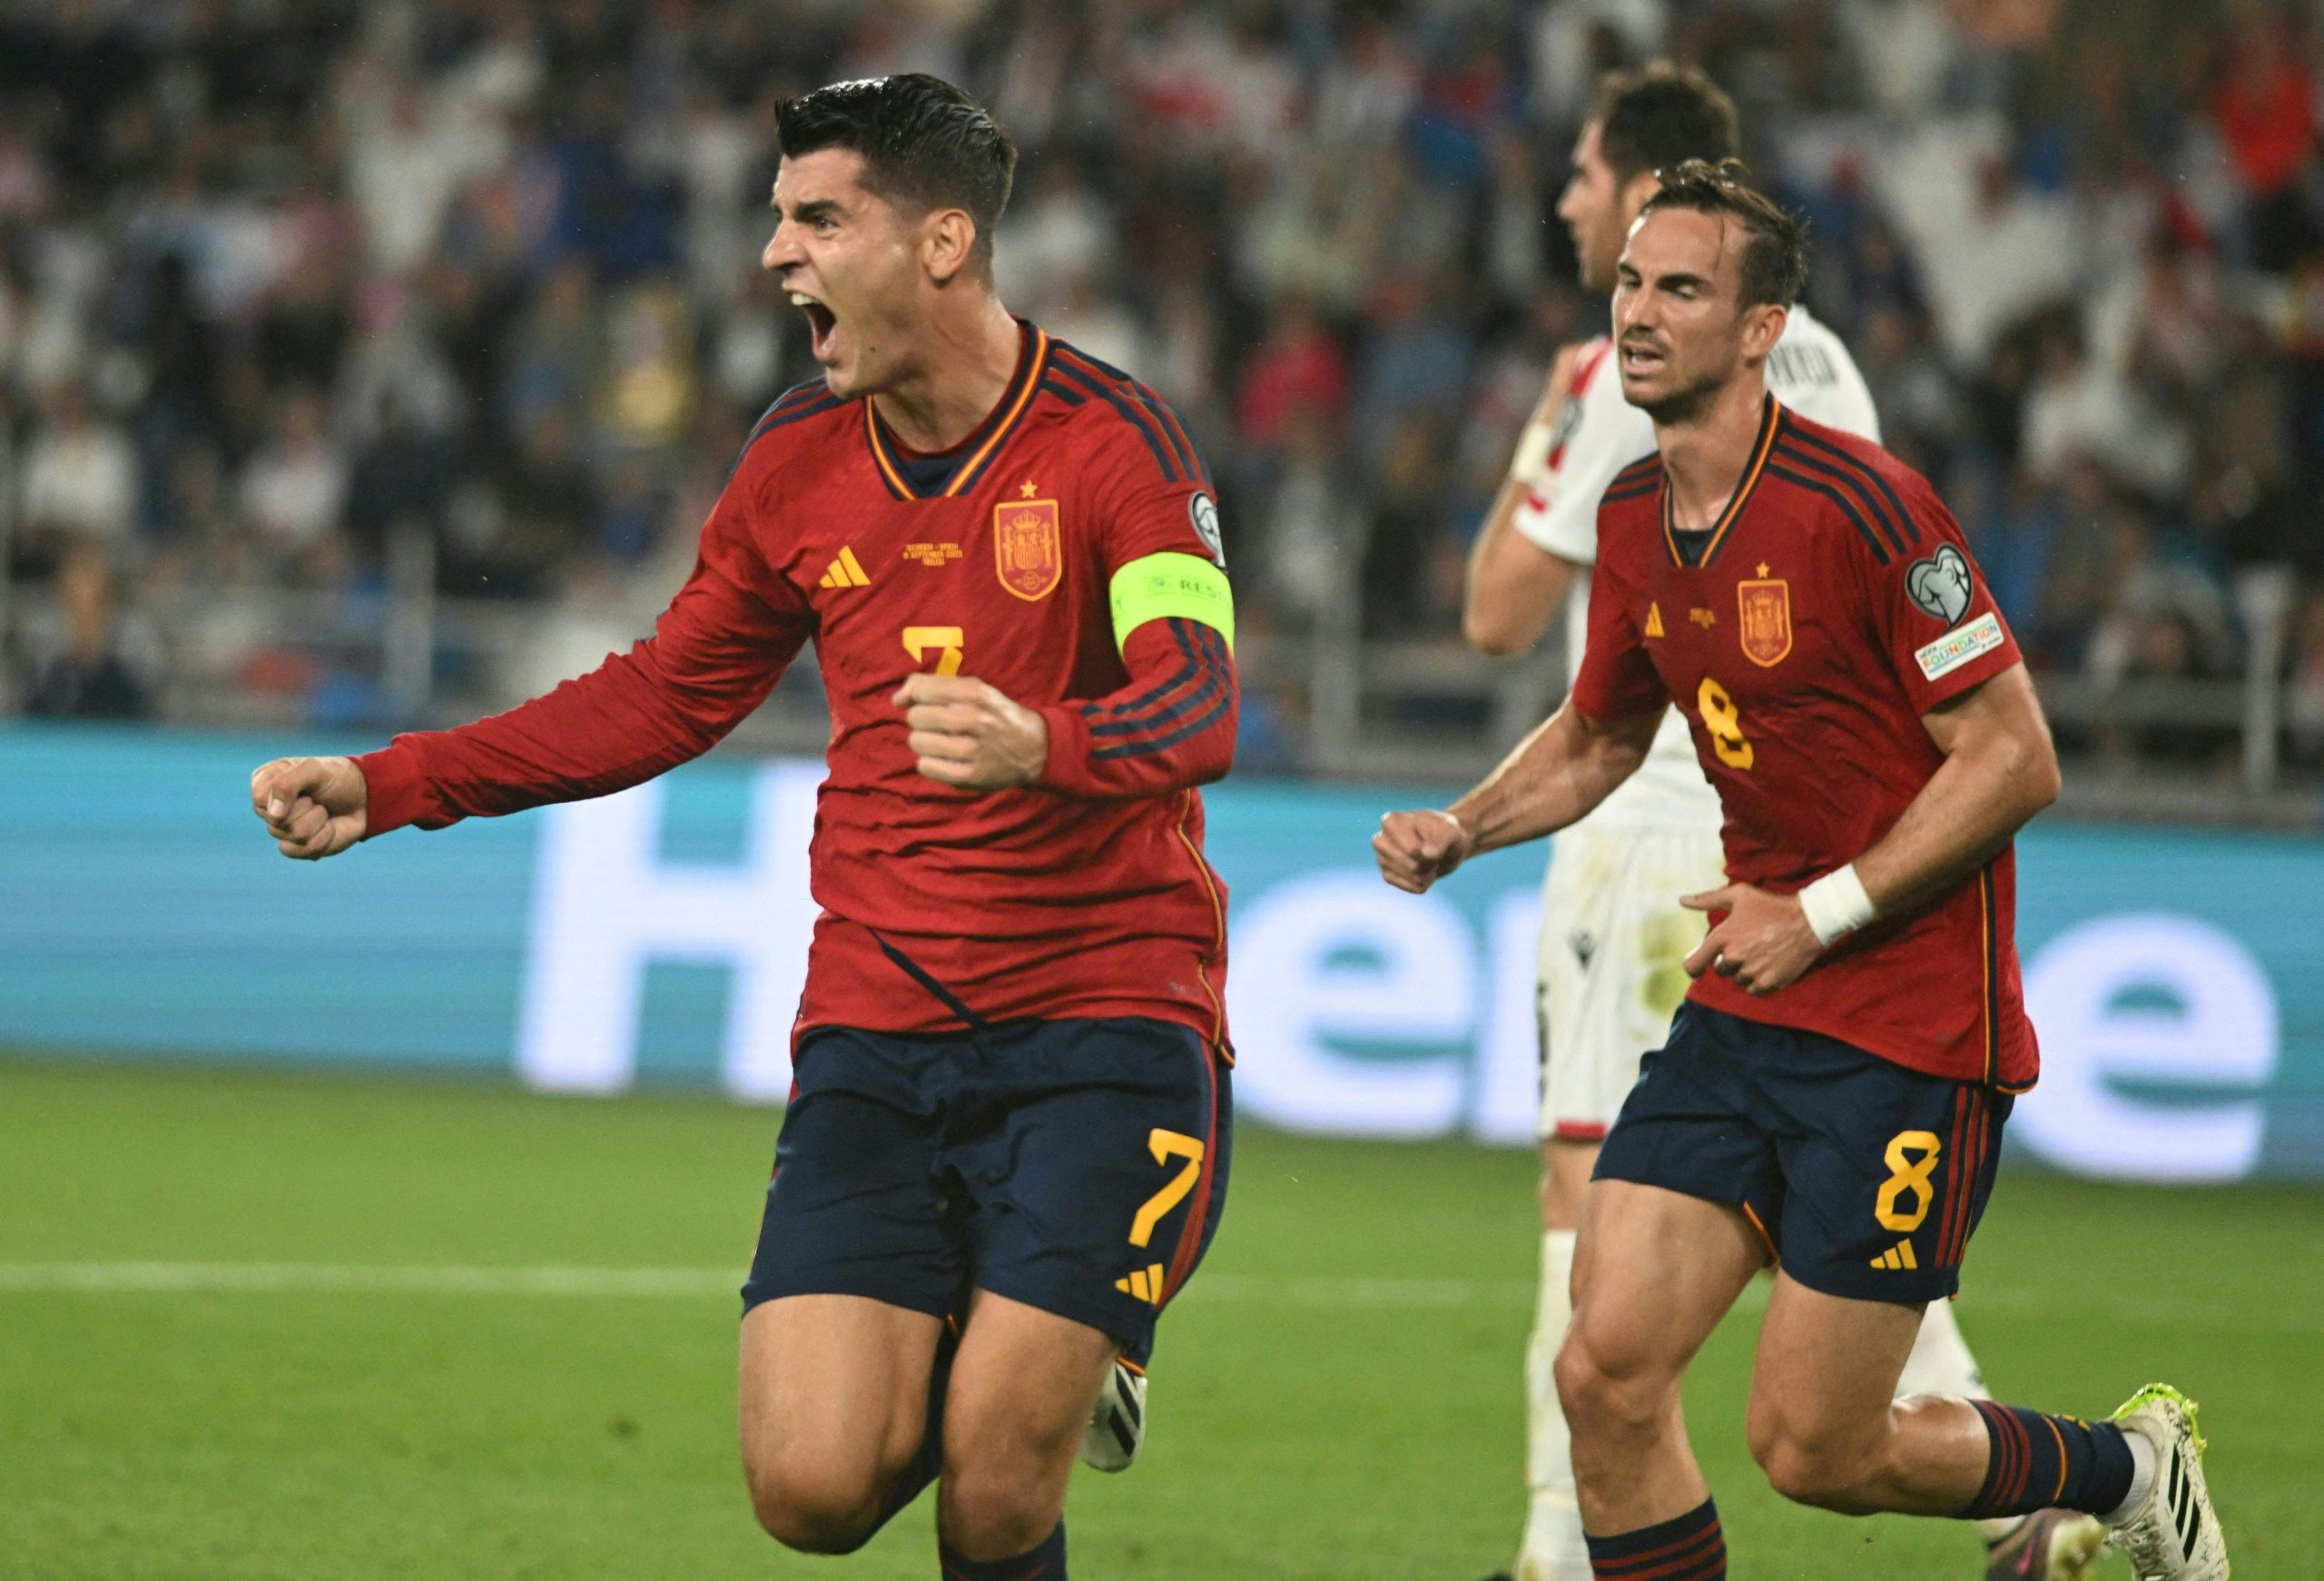 Morata celebra um dos gols marcados pela Espanha (Foto: VANO SHLAMOV/AFP via Getty Images)